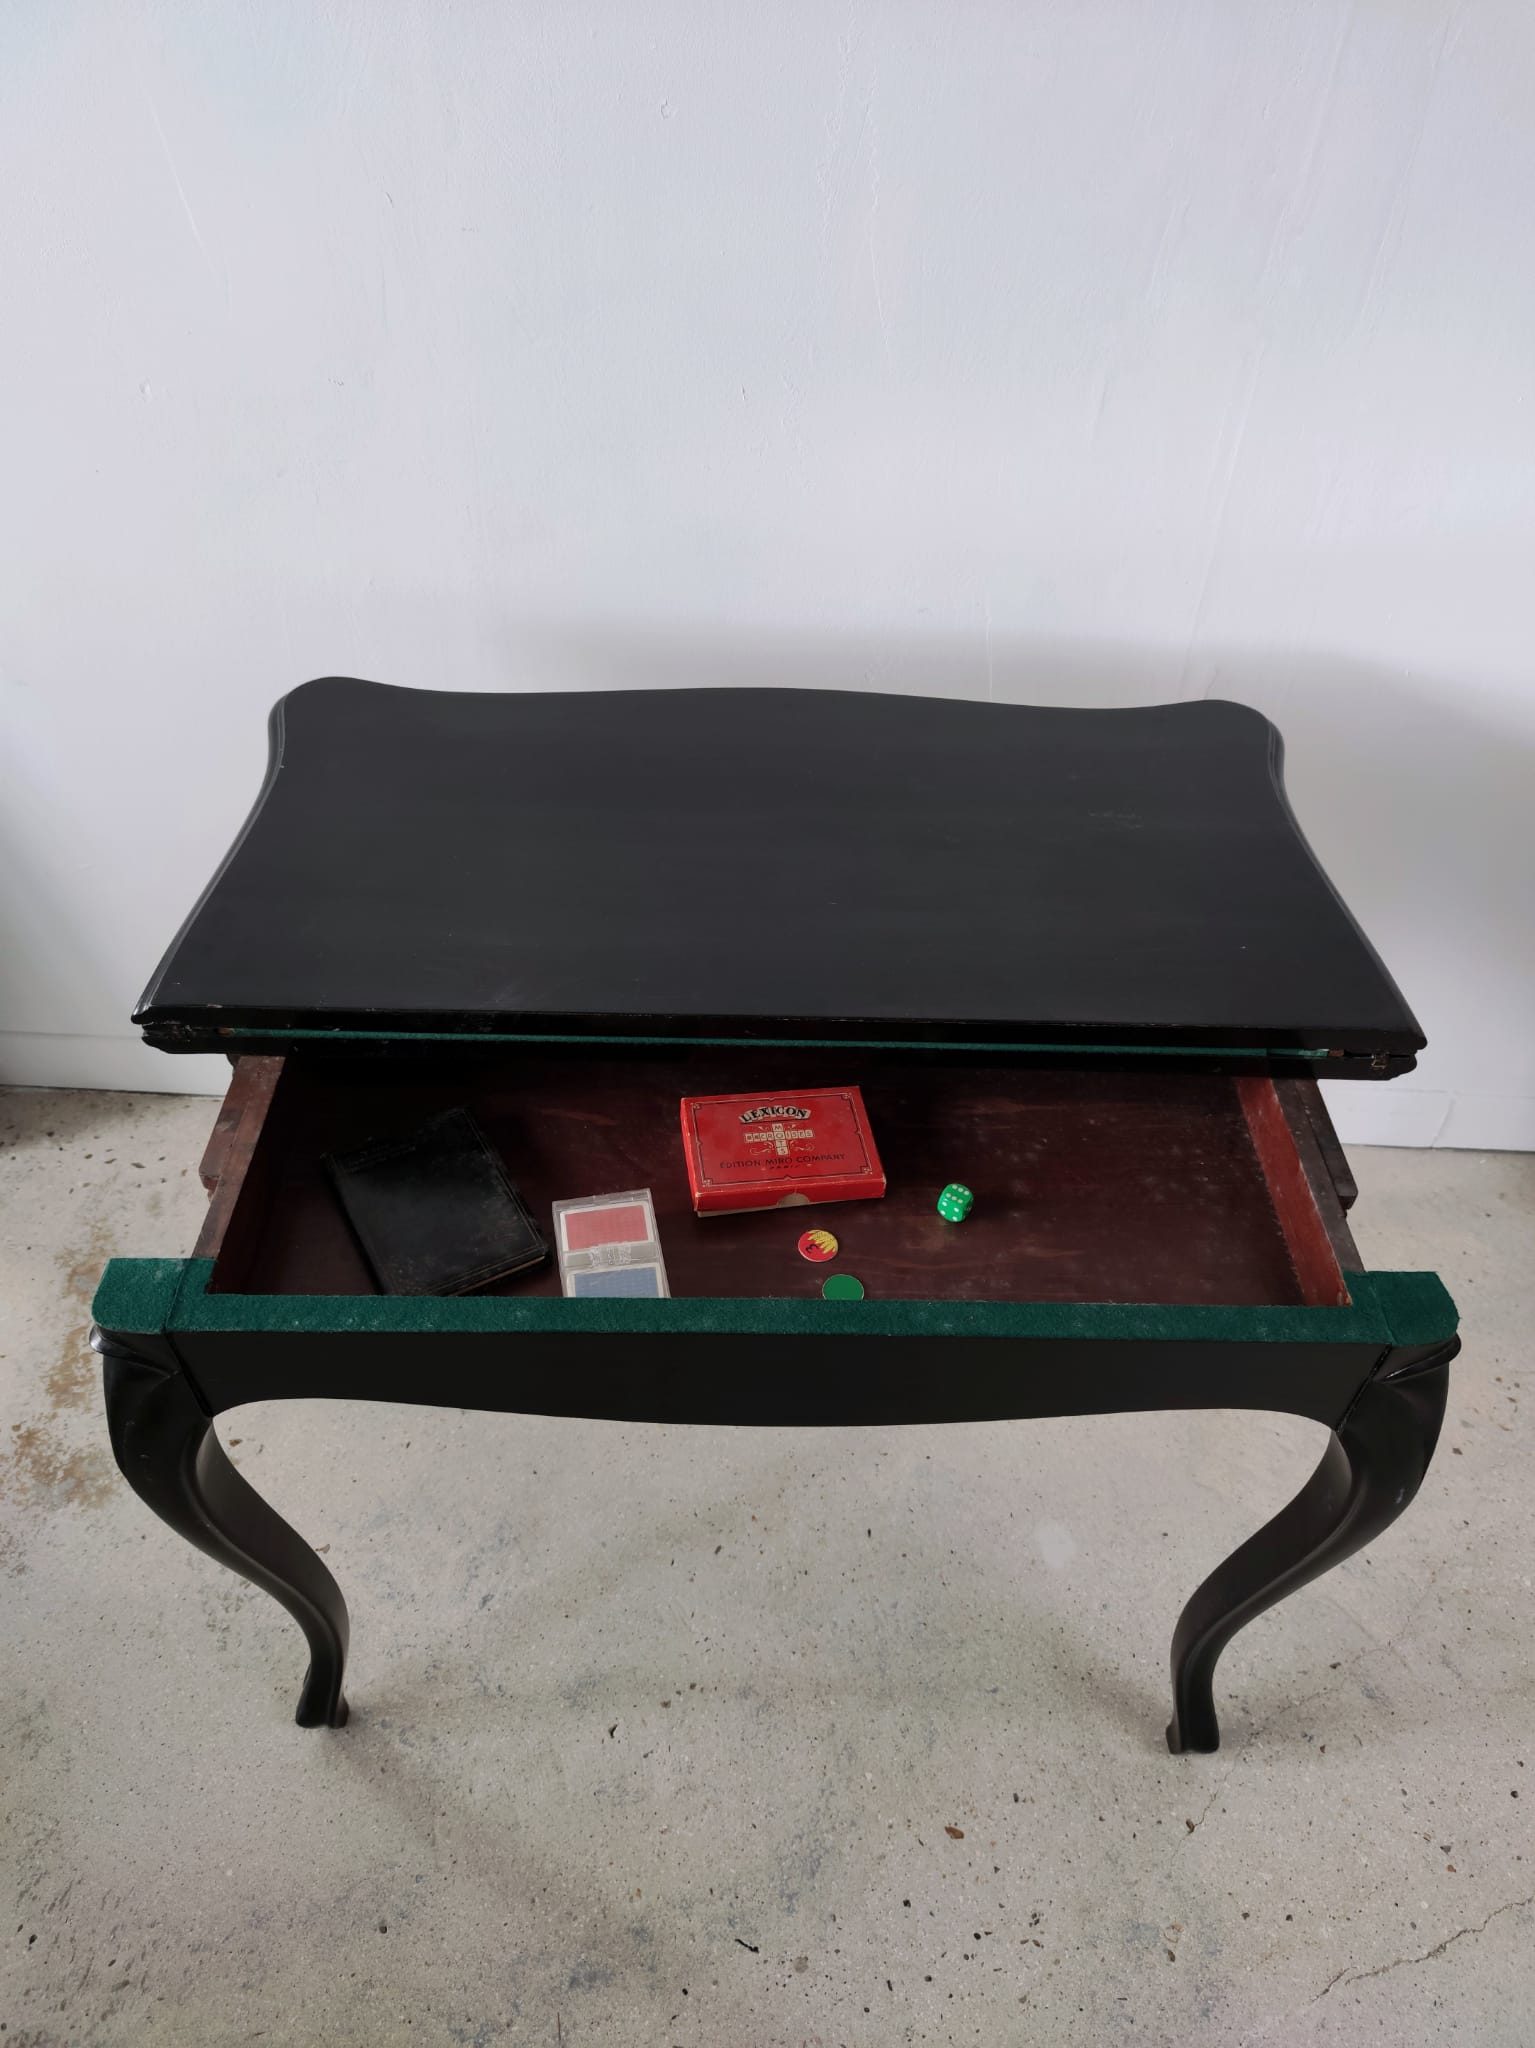 Table à jeux en bois noirci mouluré, pieds cambrés, feutrine verte